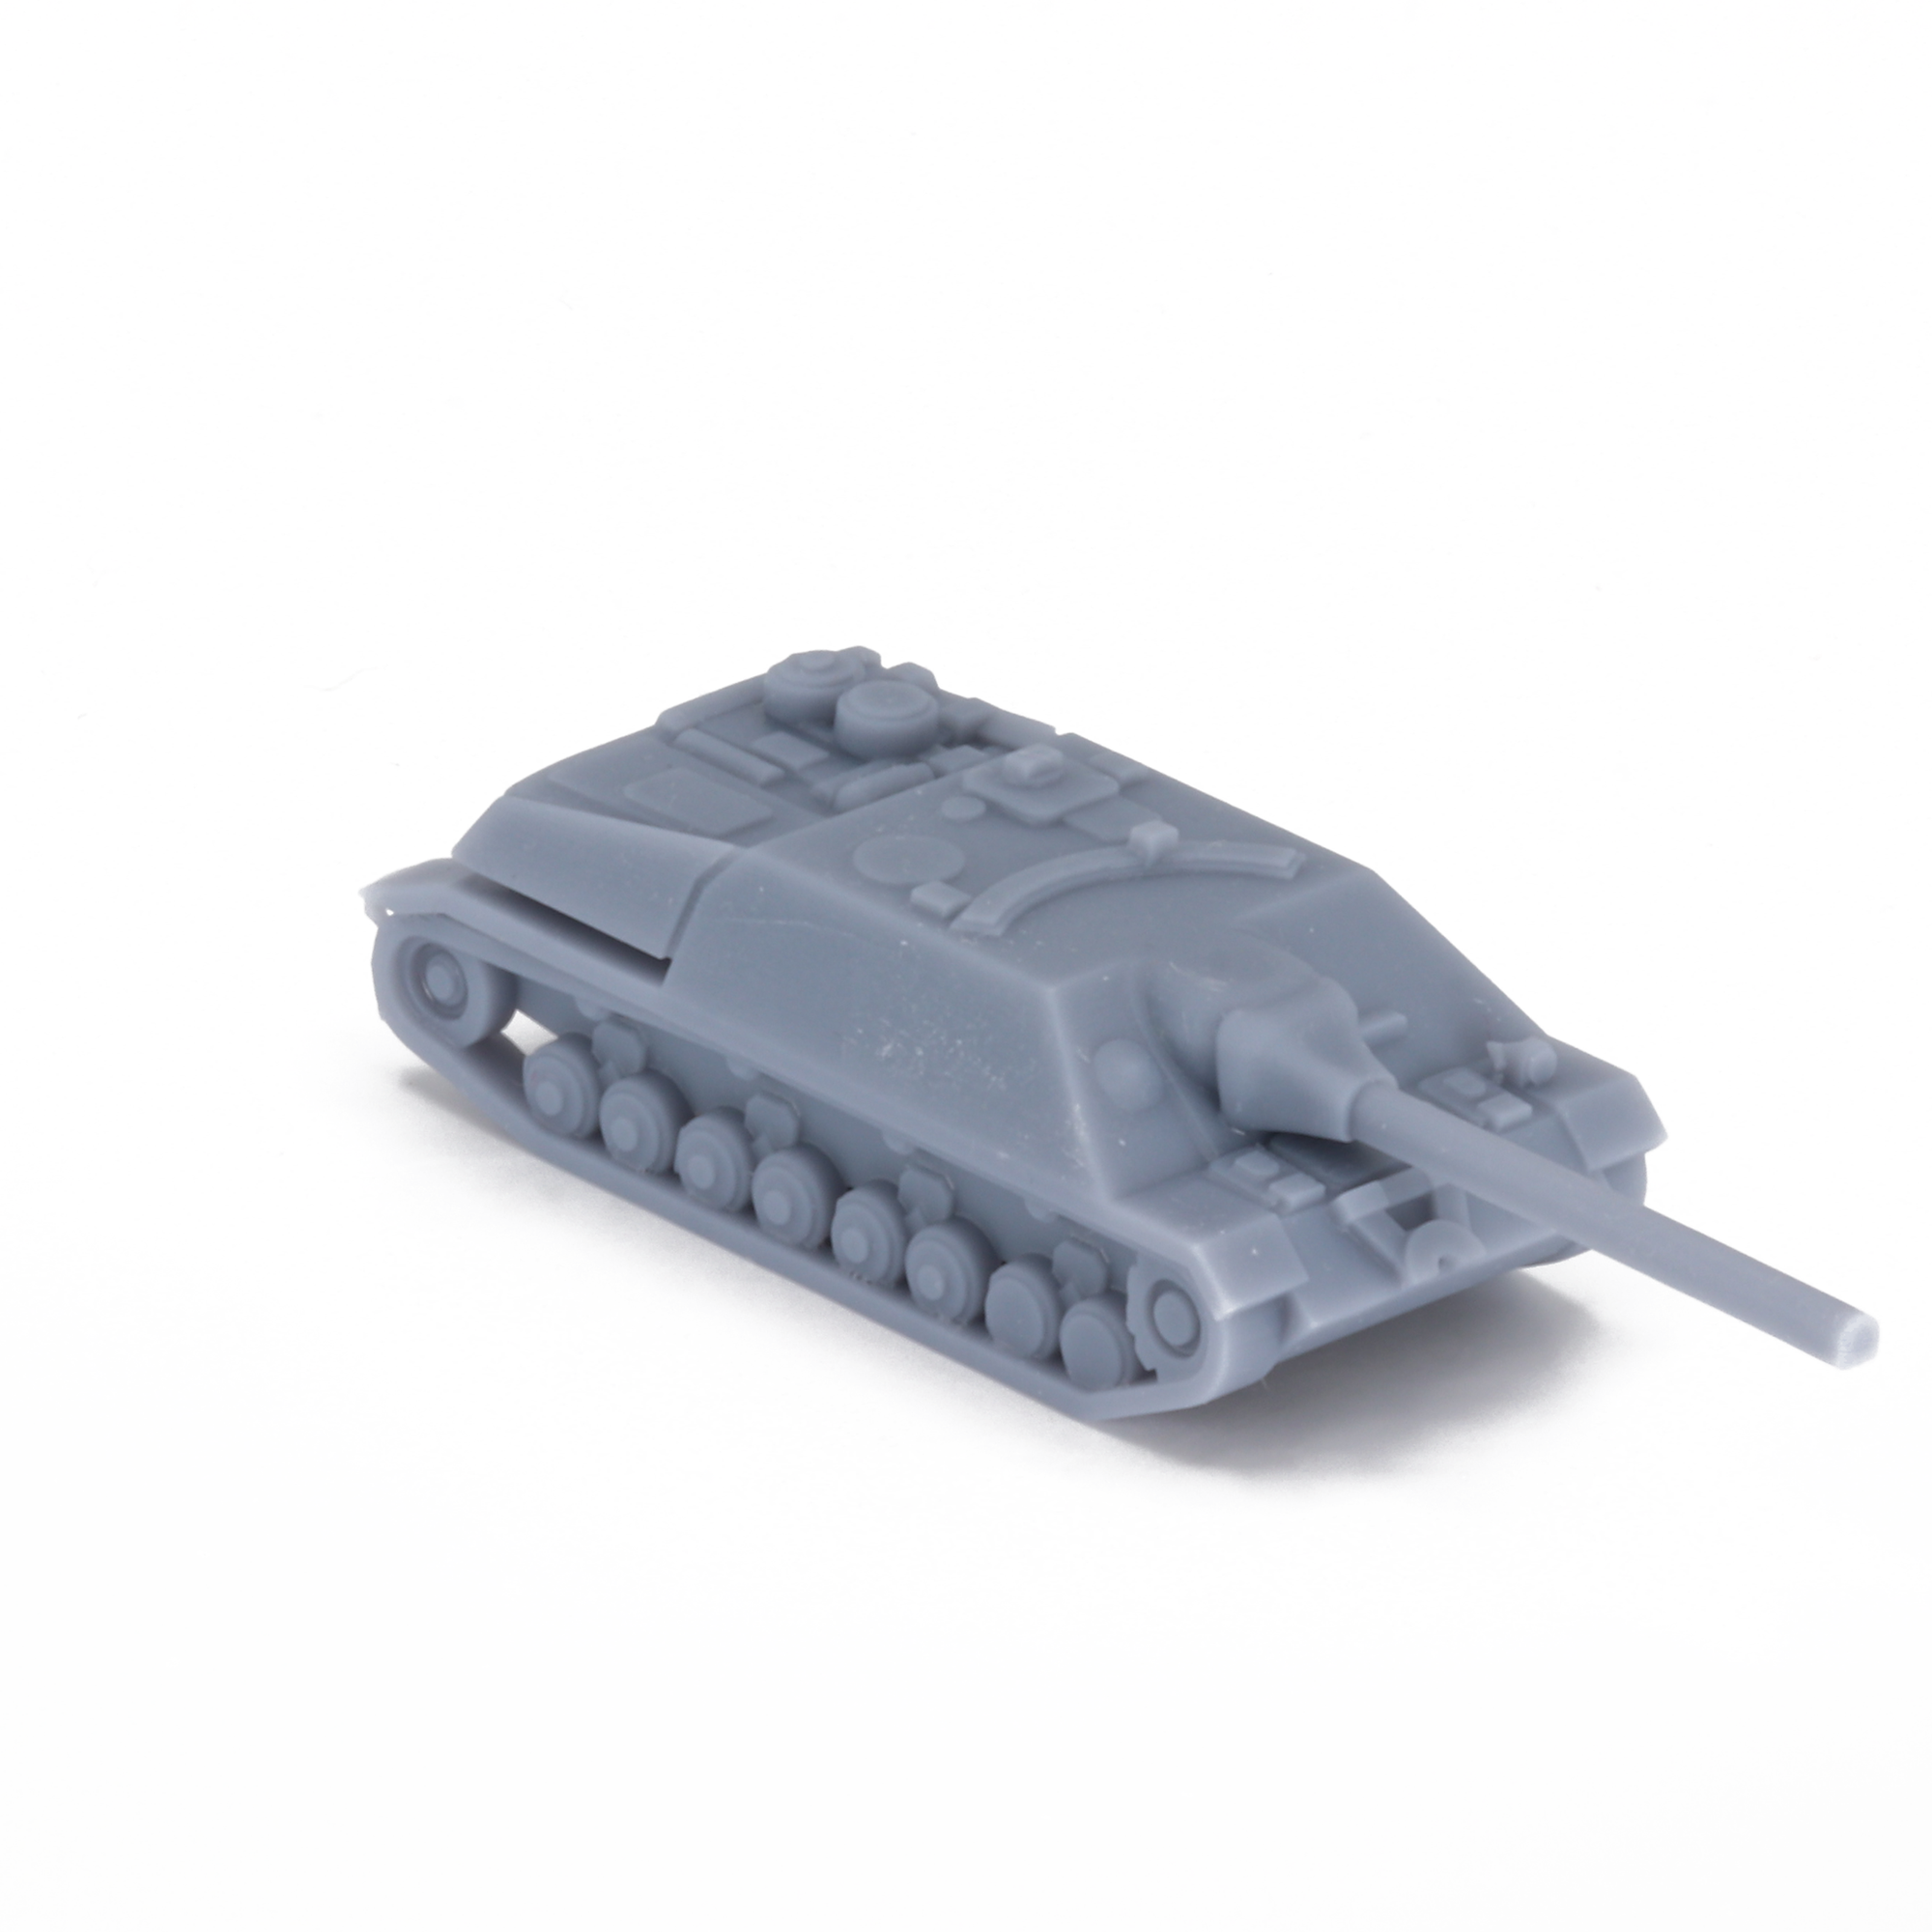 Jagdpanzer IV L70